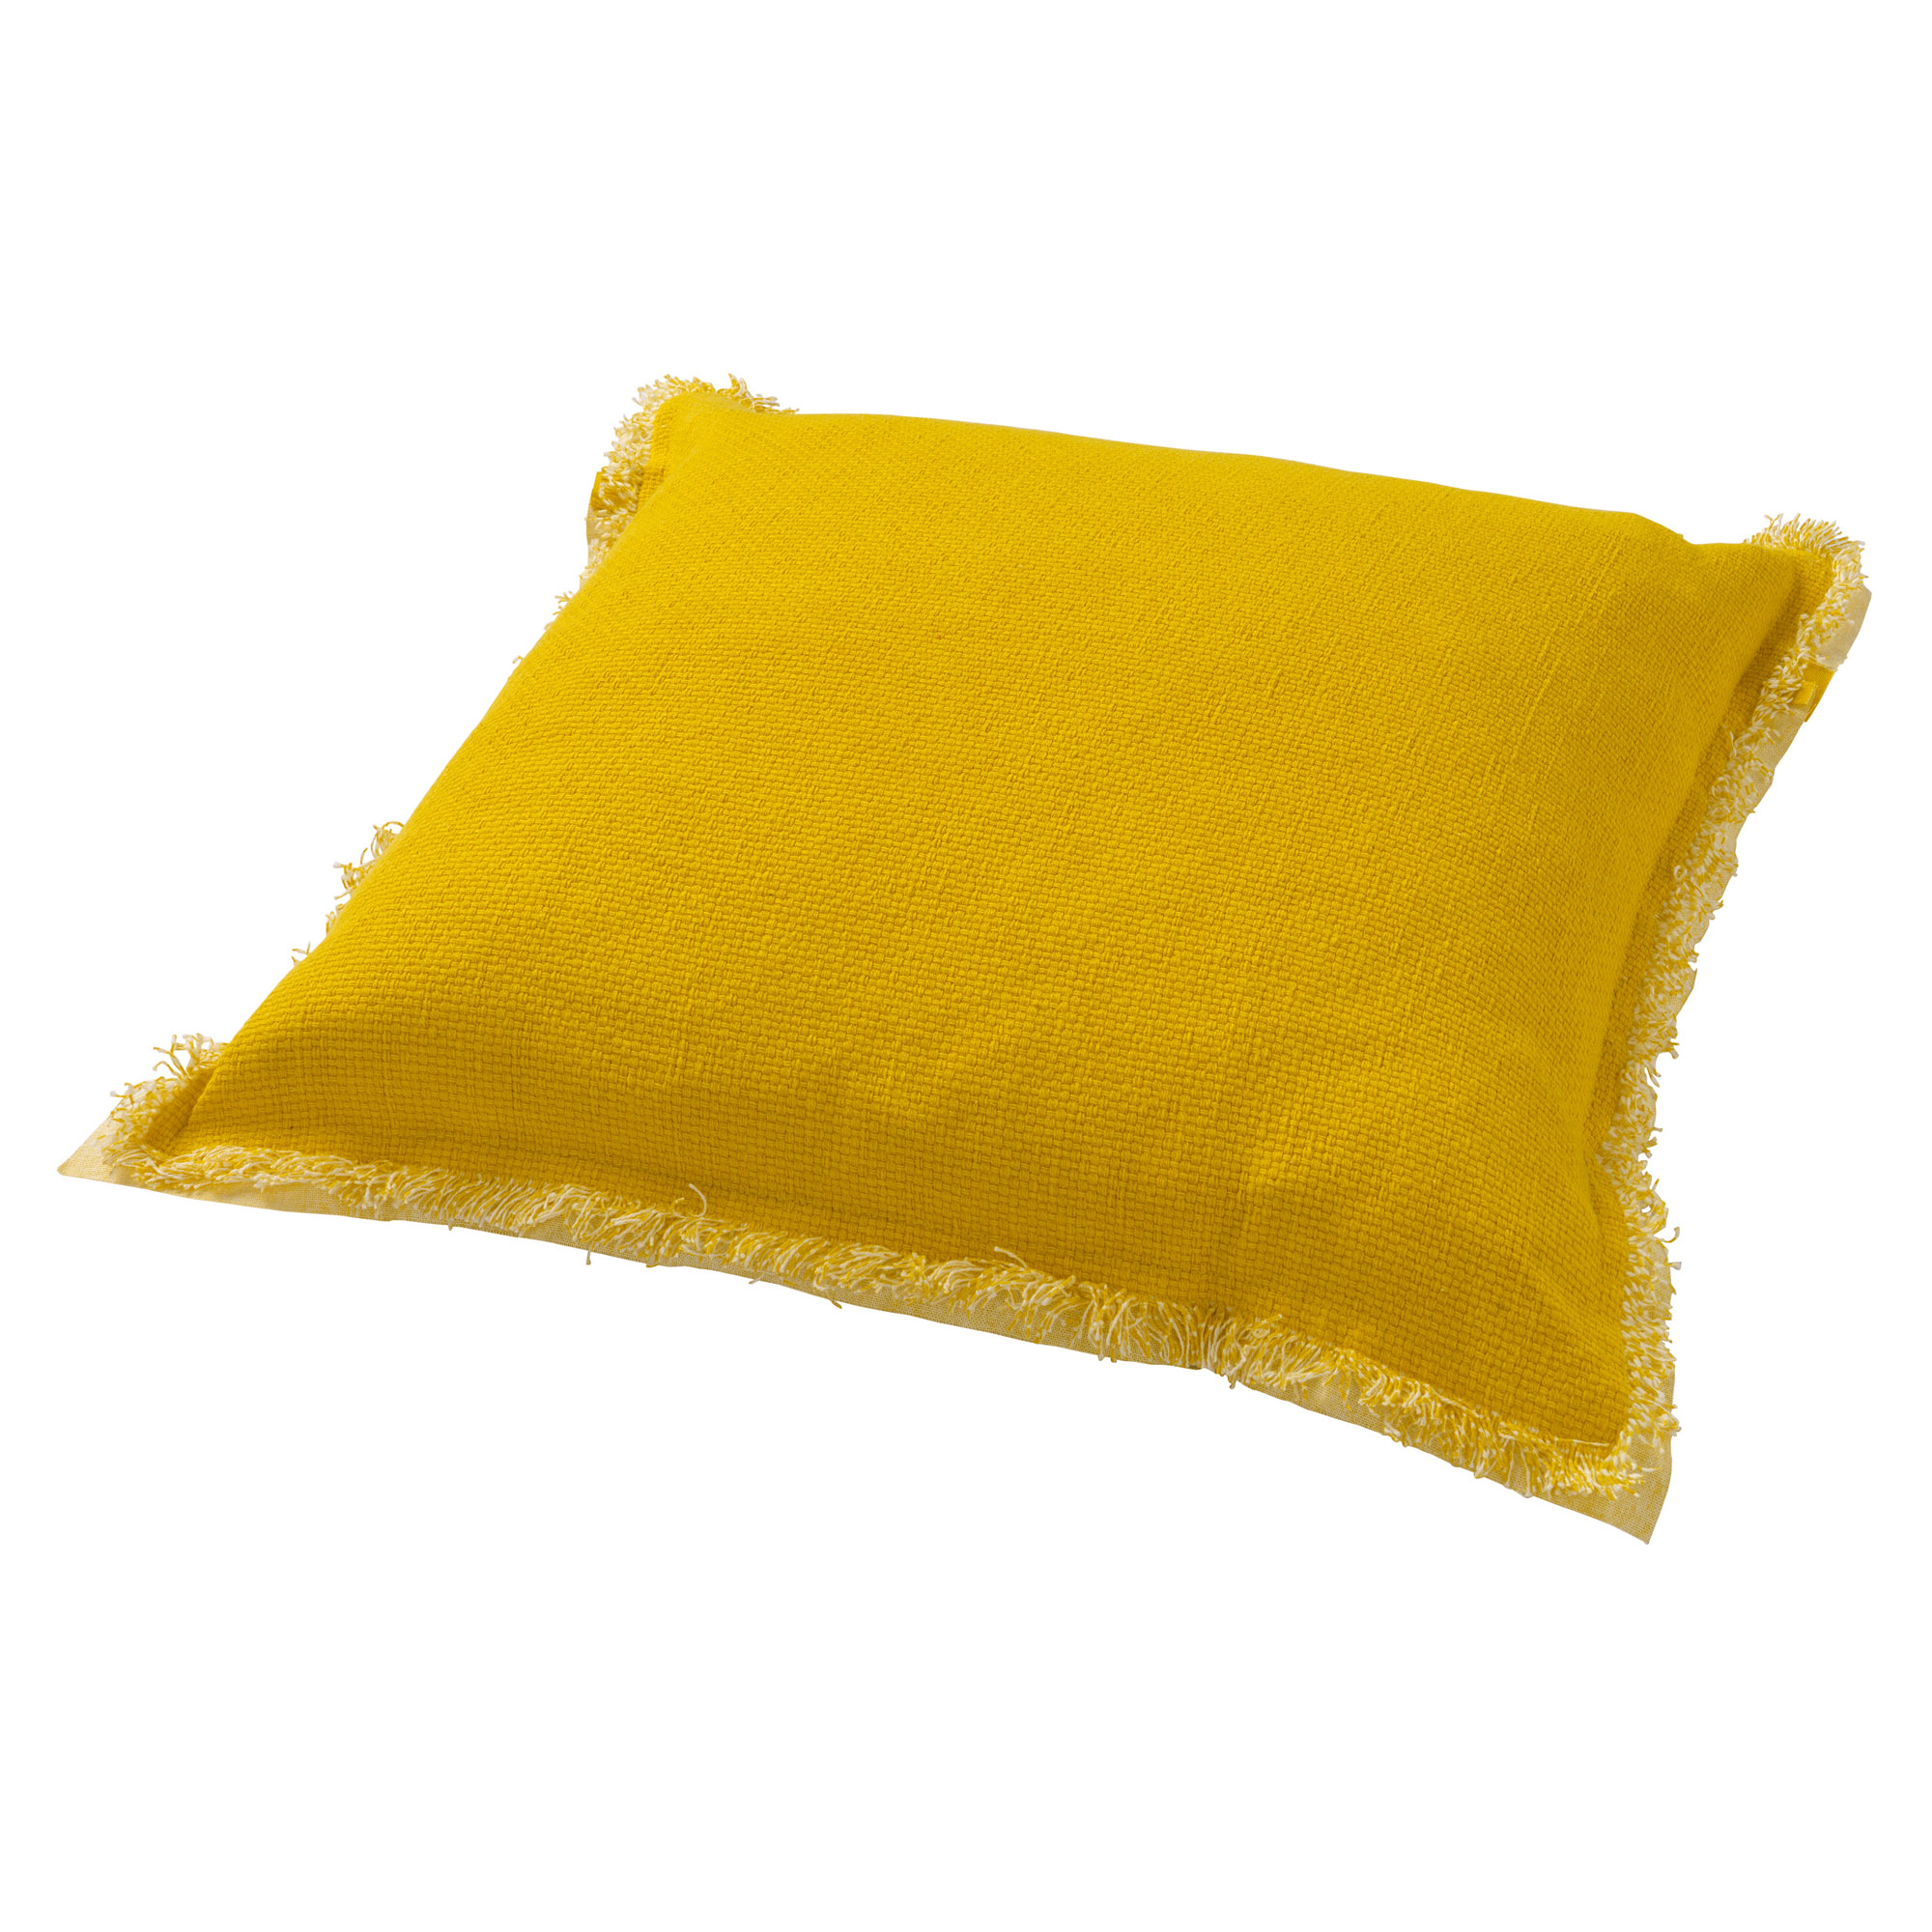 BURTO - Kussenhoes van gewassen katoen Lemon 60x60 cm - geel